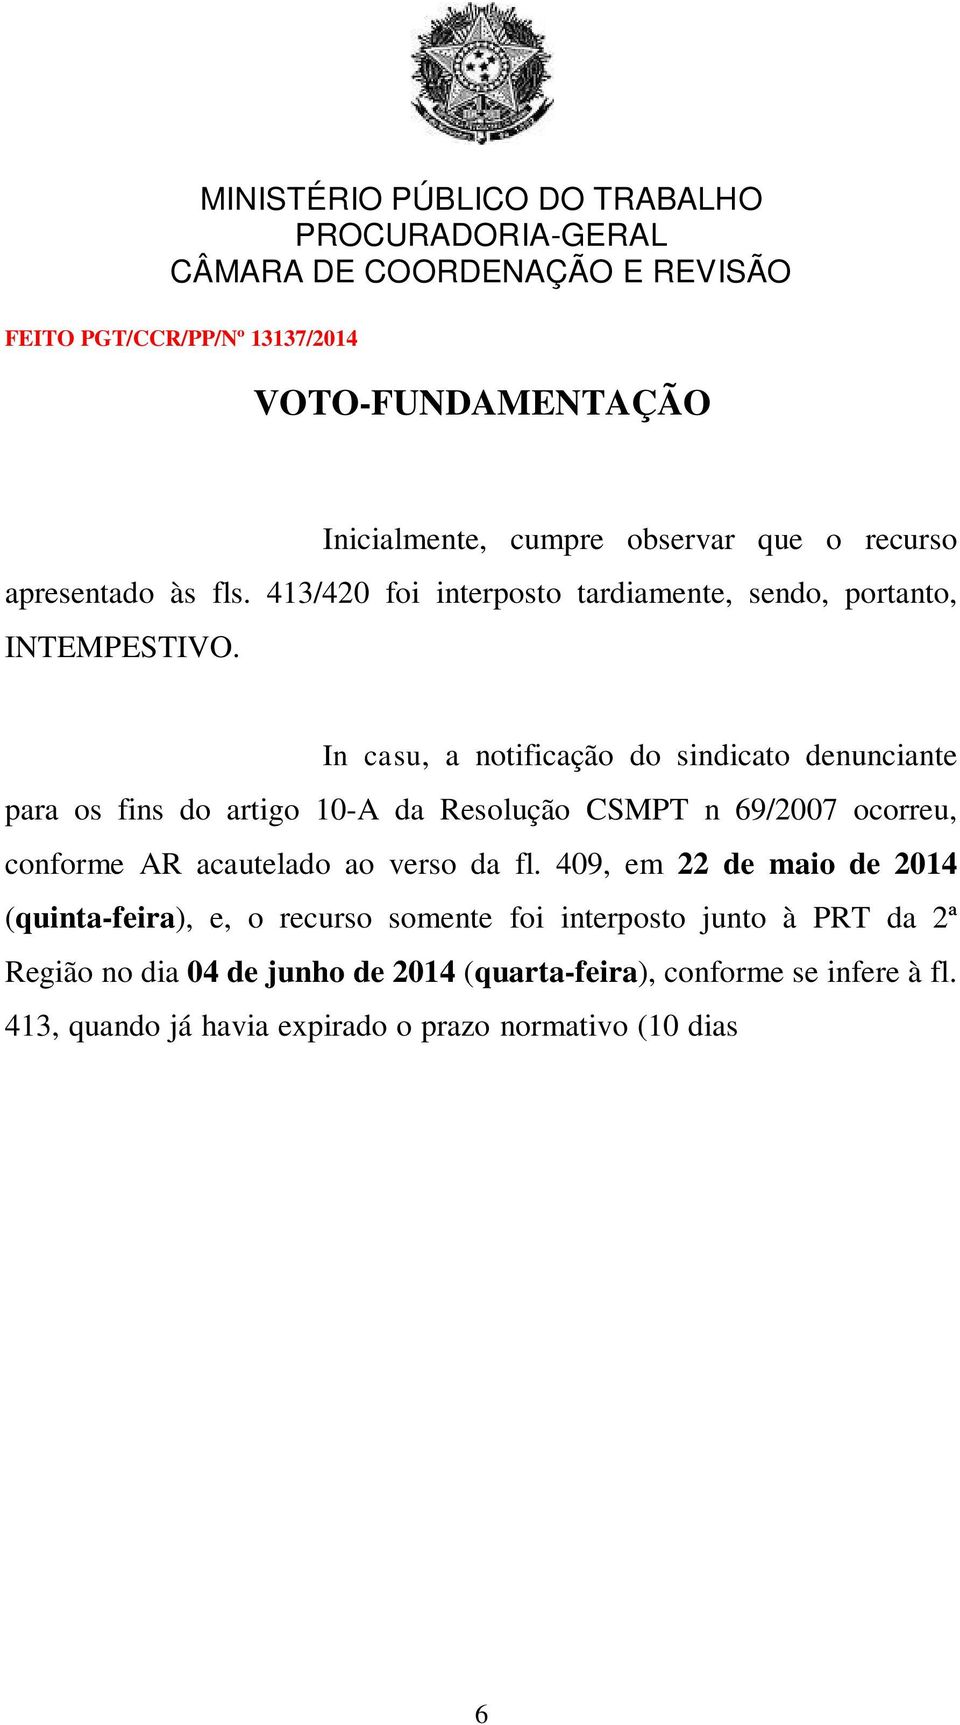 409, em 22 de maio de 2014 (quinta-feira), e, o recurso somente foi interposto junto à PRT da 2ª Região no dia 04 de junho de 2014 (quarta-feira), conforme se infere à fl.